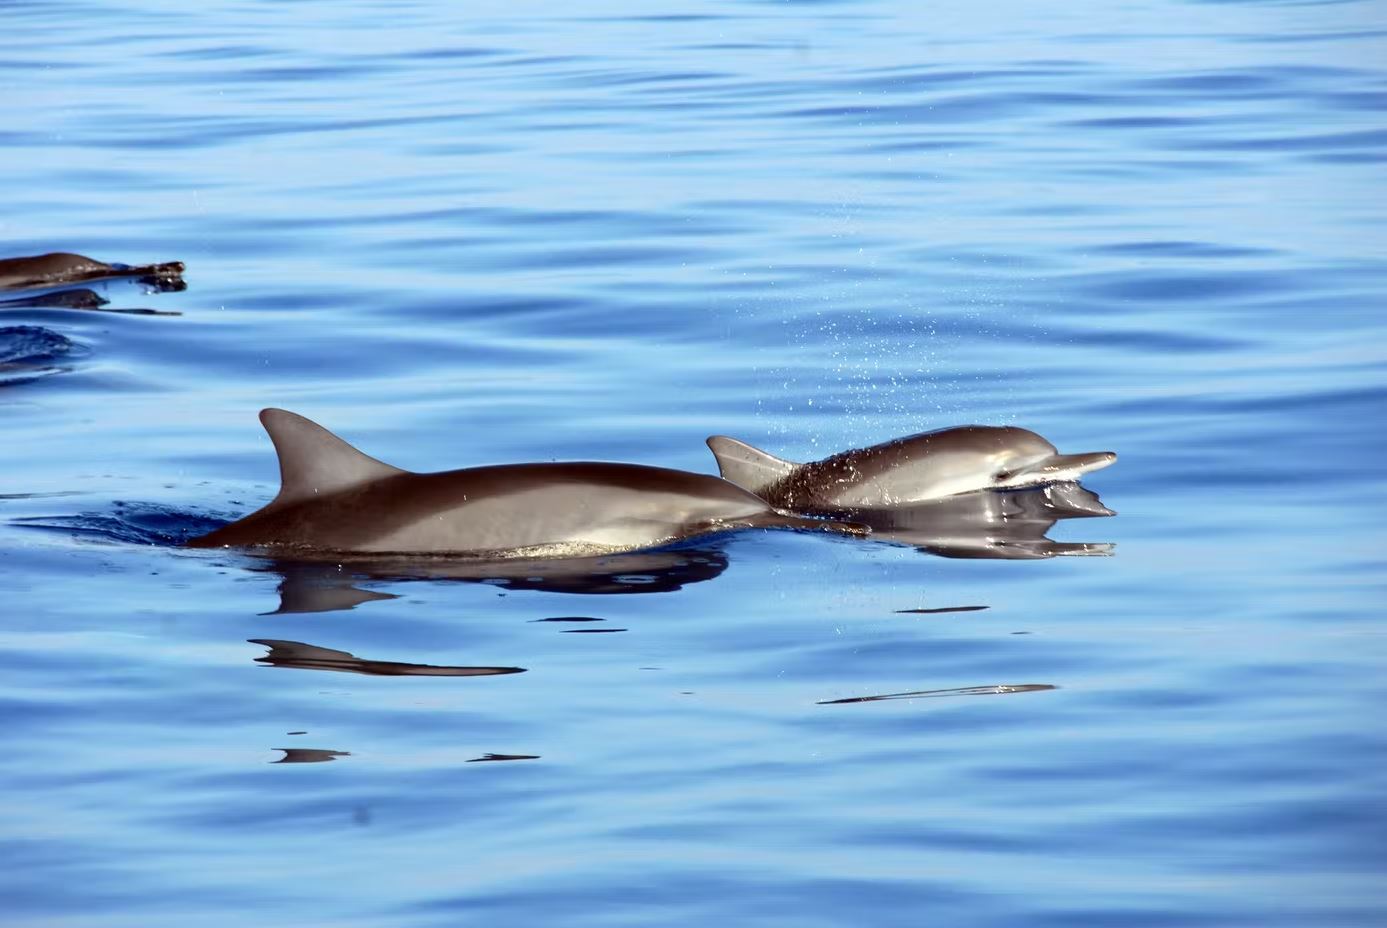 oahu hawaii dolphins